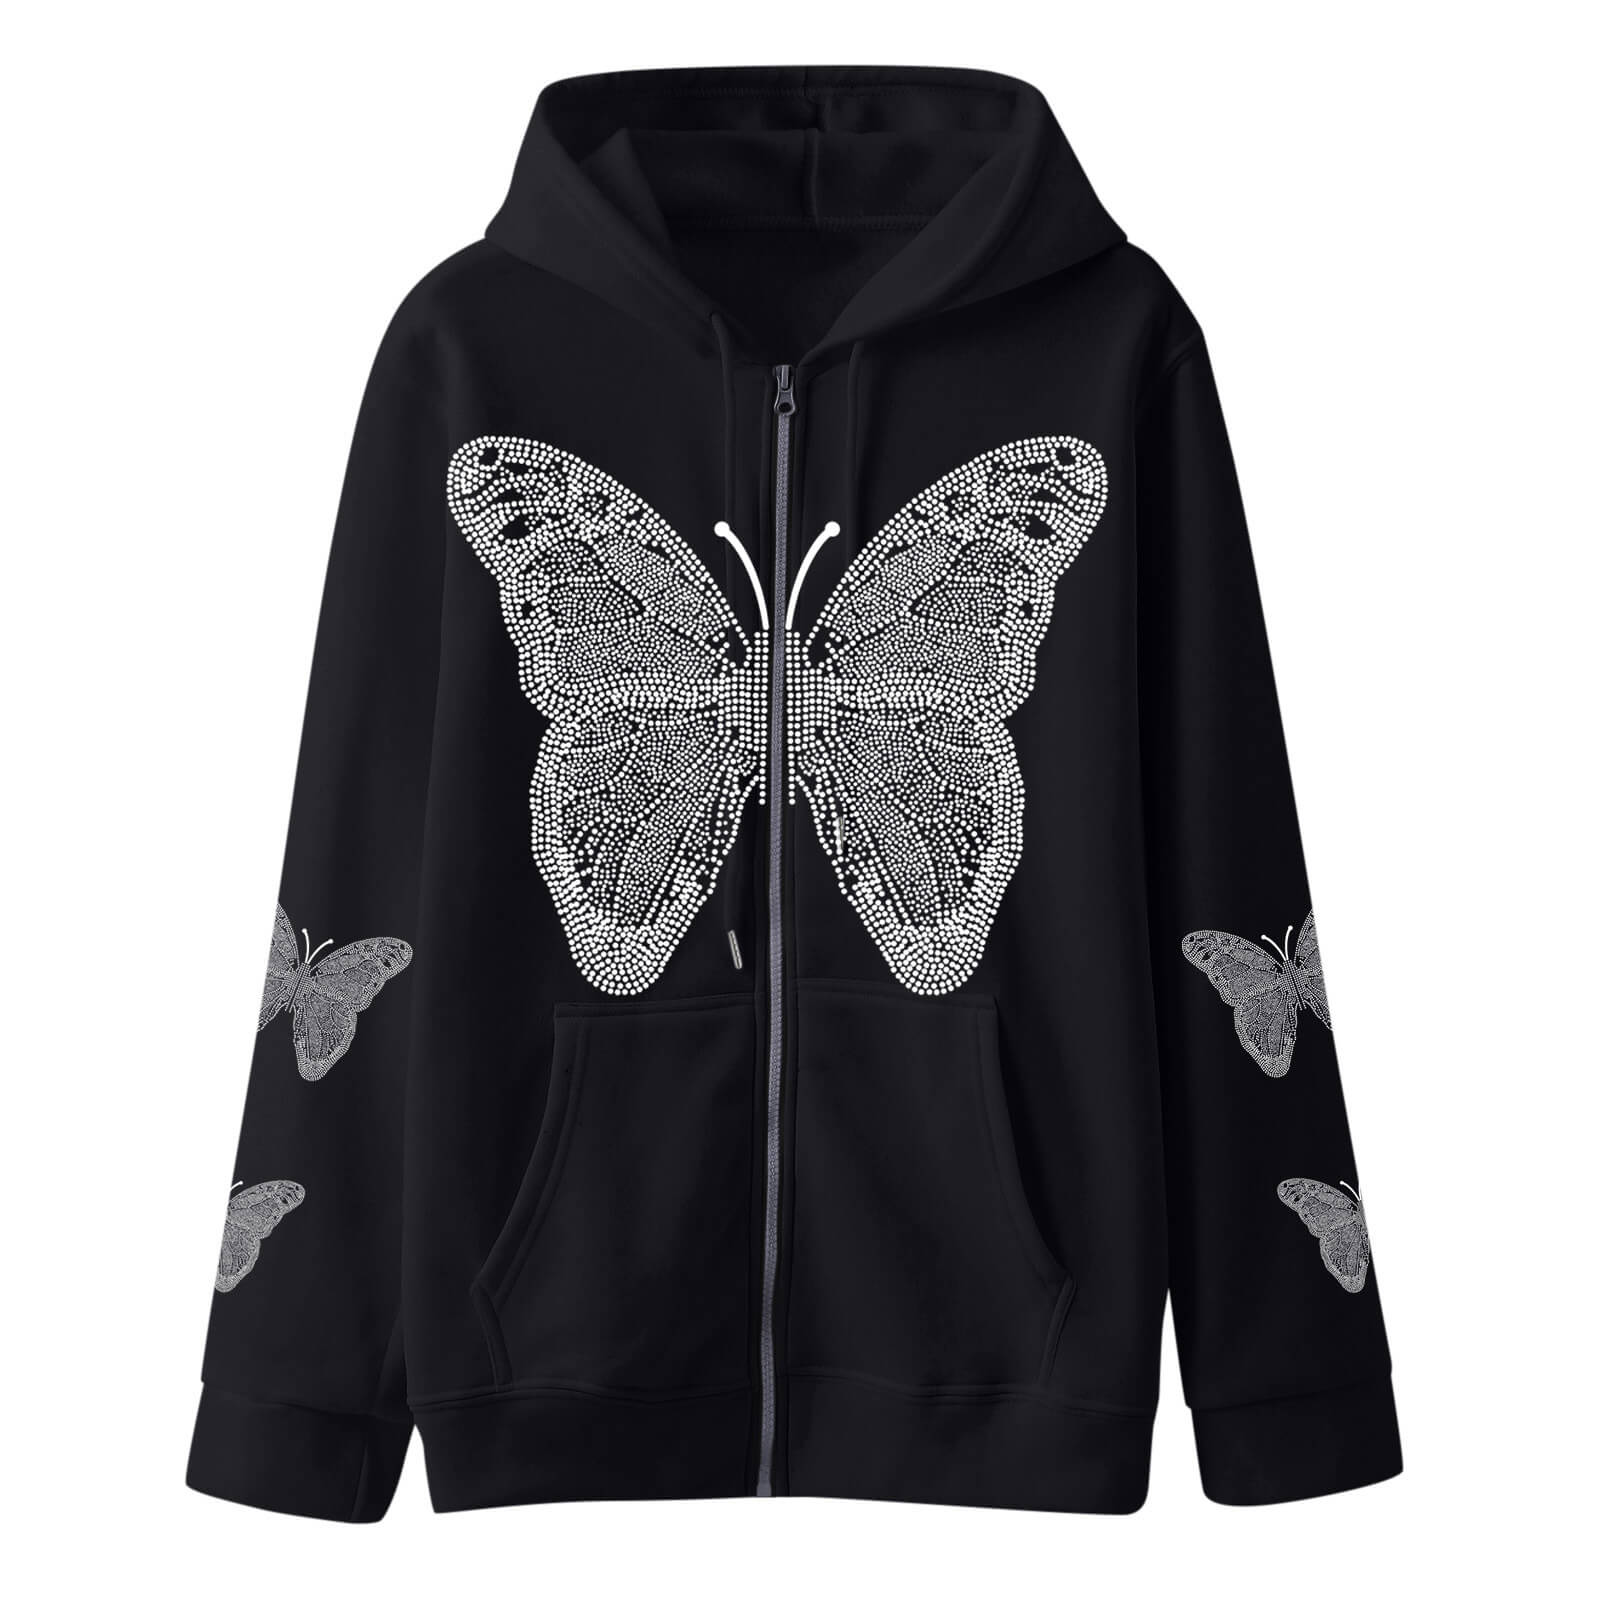 cutiekill-butterflies-zipper-hoodie-ah0242